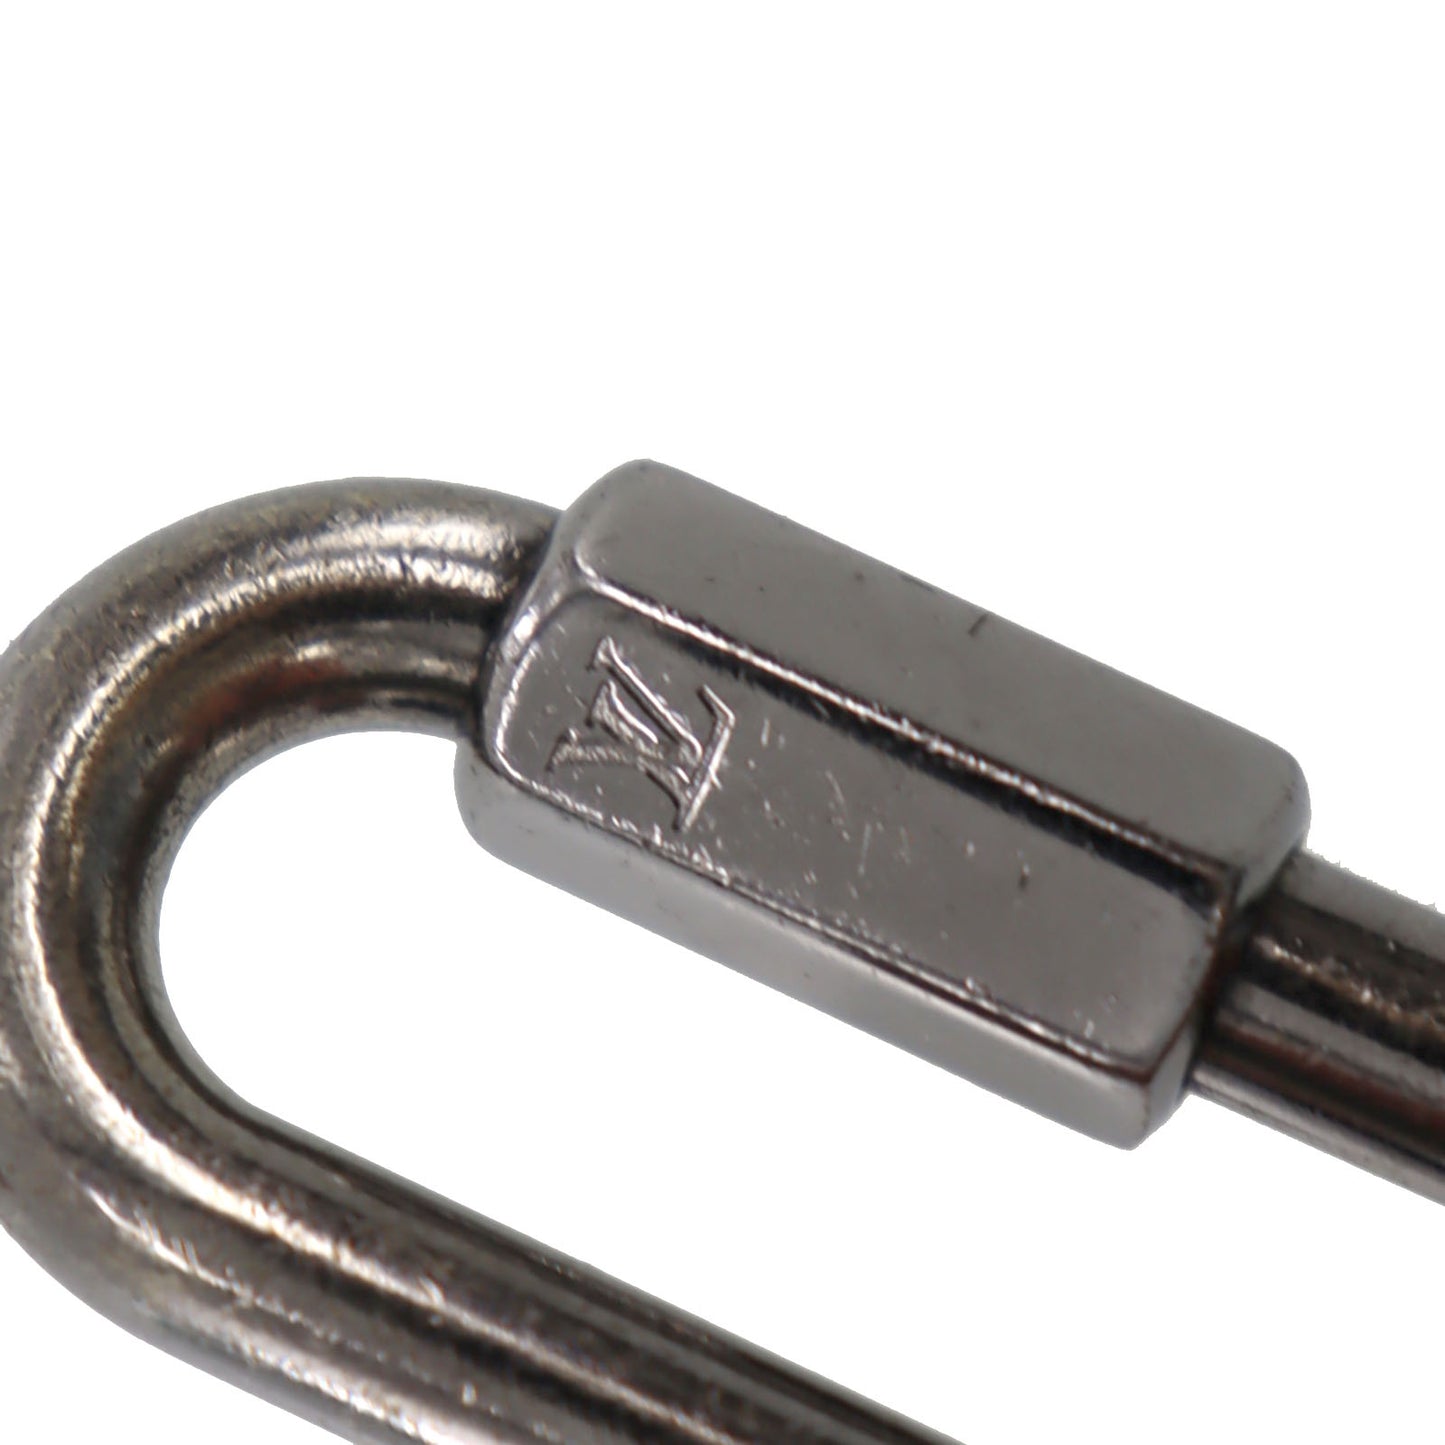 LOUIS VUITTON LV Key Ring Porte Cles-Round-Rainbow Monogram #AG598